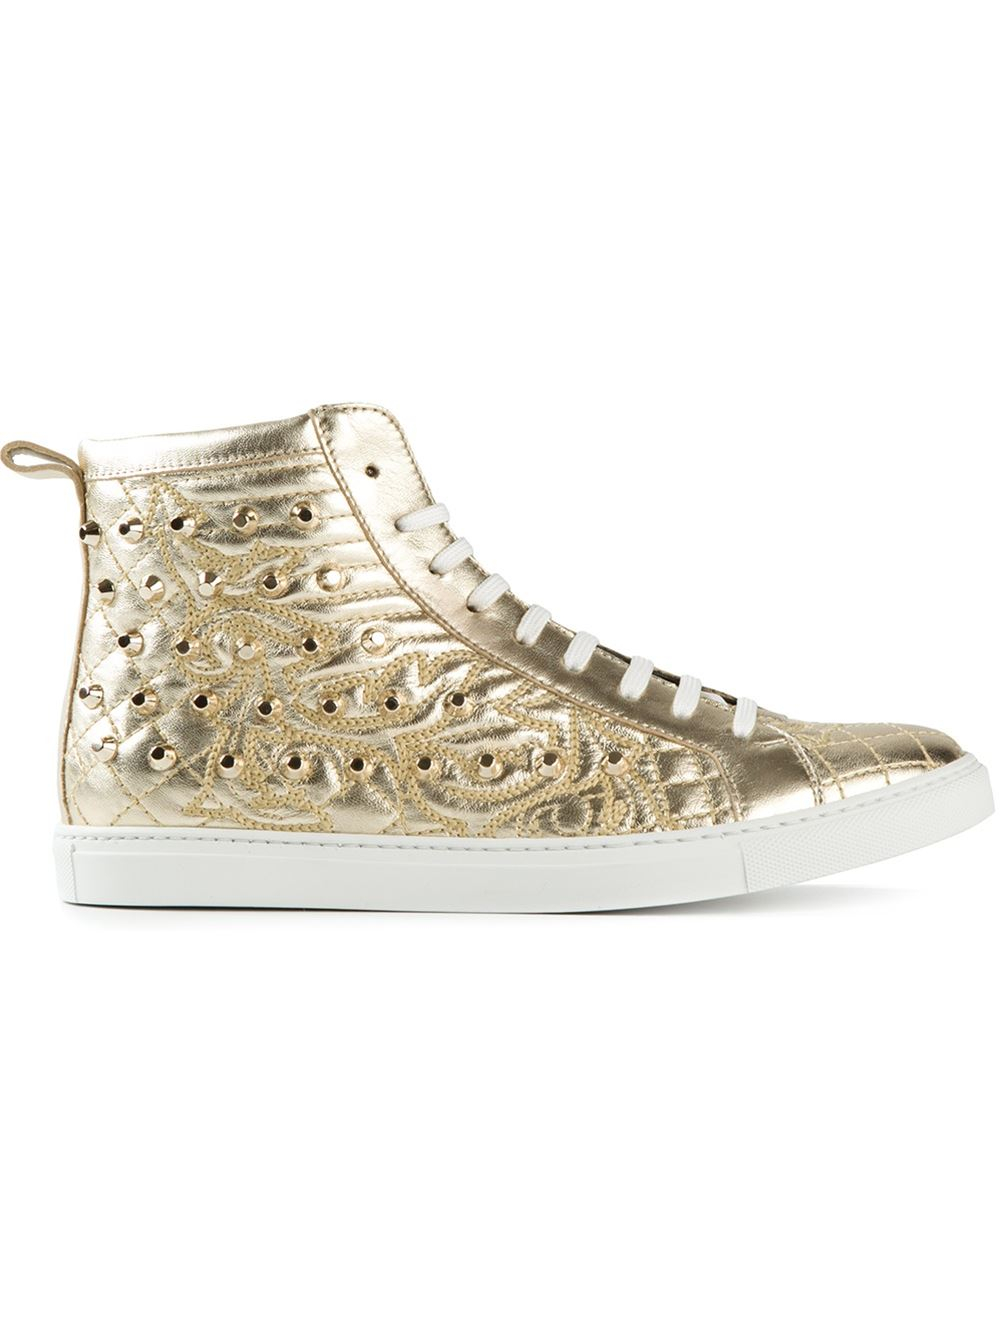 Versace 'Vanitas' Quilted Hi-Top Sneakers in Gold (metallic) | Lyst